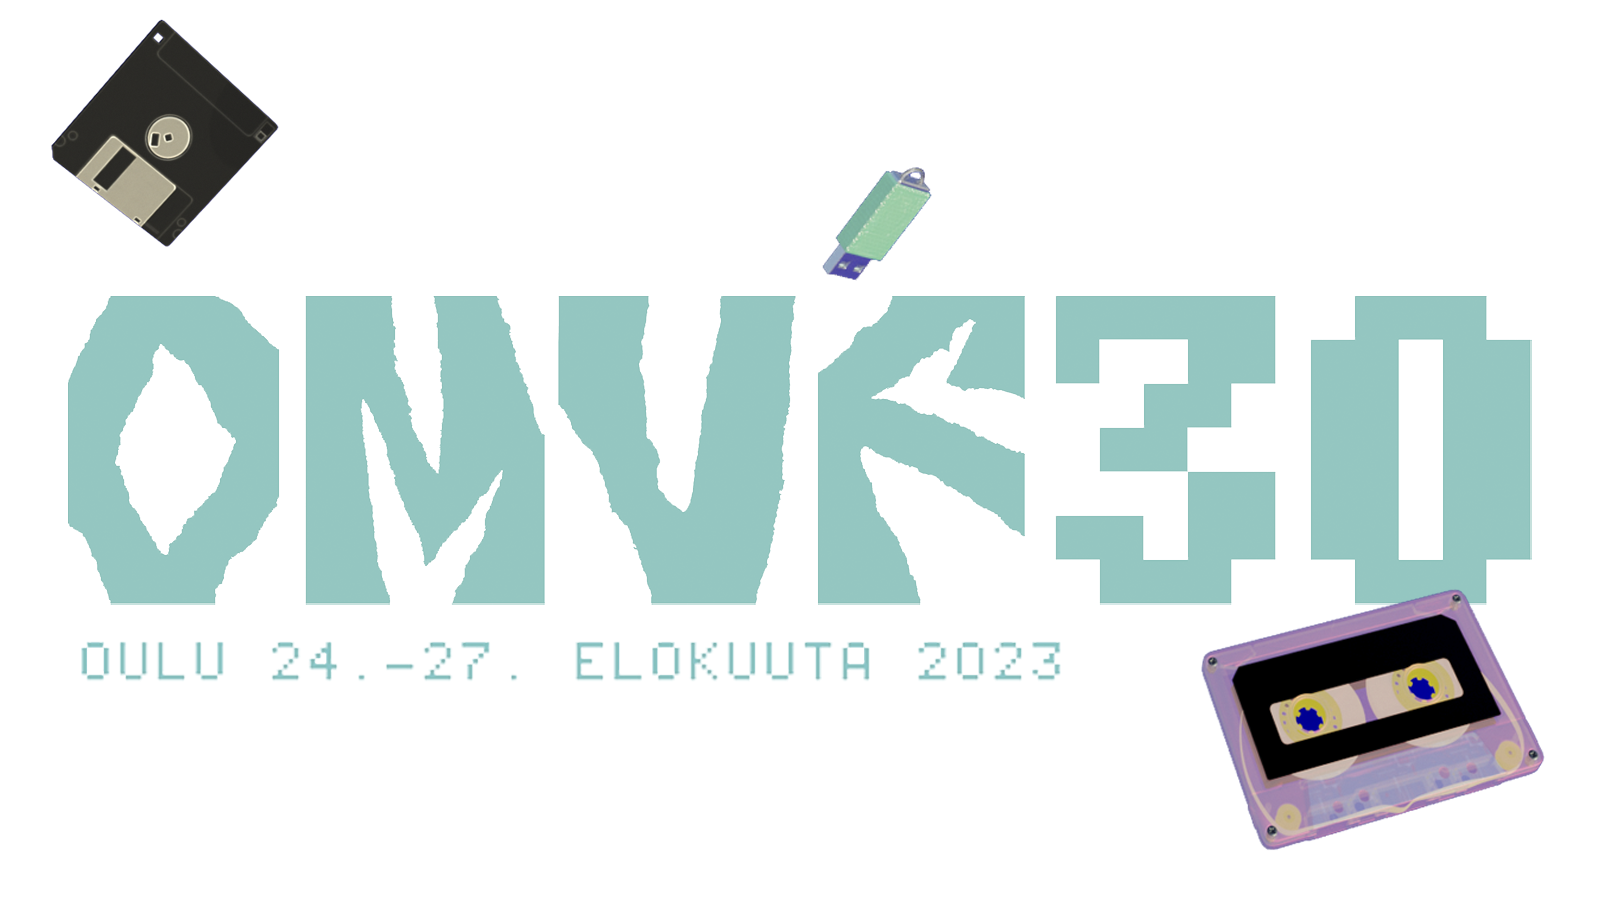 OMVF - Oulun Musiikkivideofestivaalit - Oulu Music Video Festival